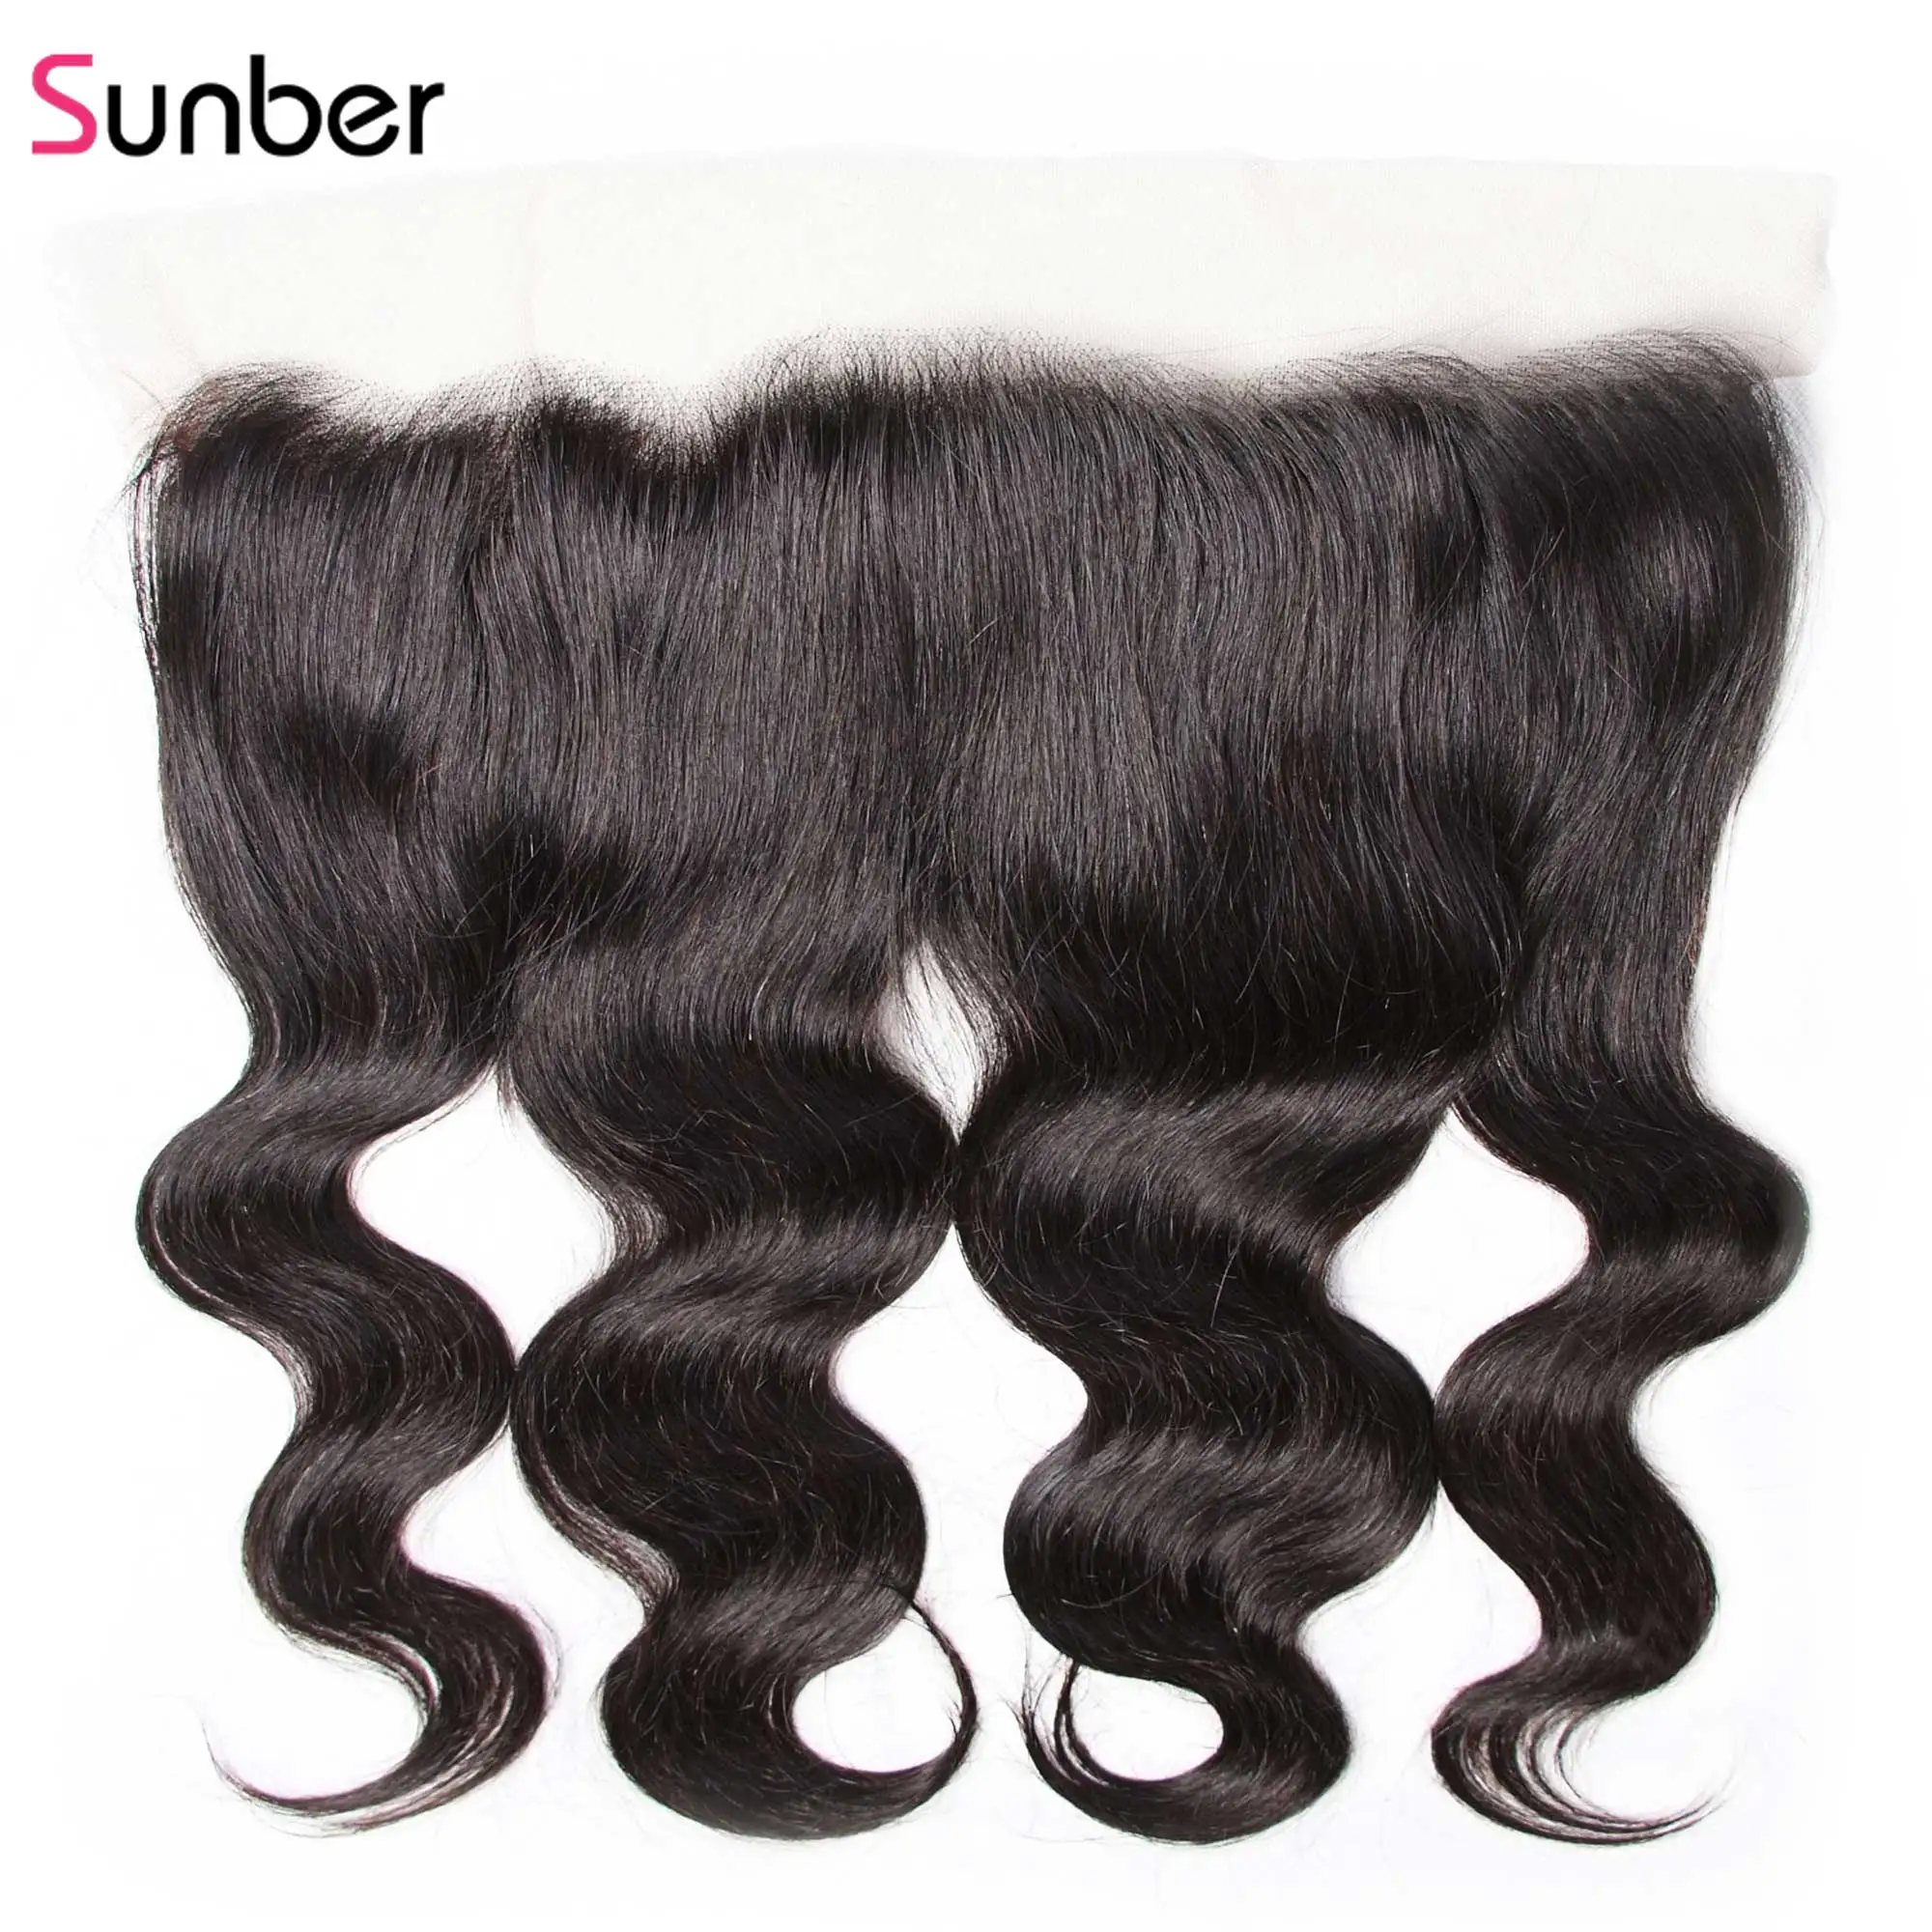 Sunber волос перуанская волна тела Clsoure часть Размер Человеческие волосы remy 10-20 дюймов 13*4 прозрачные фронтальные волосы шнурка